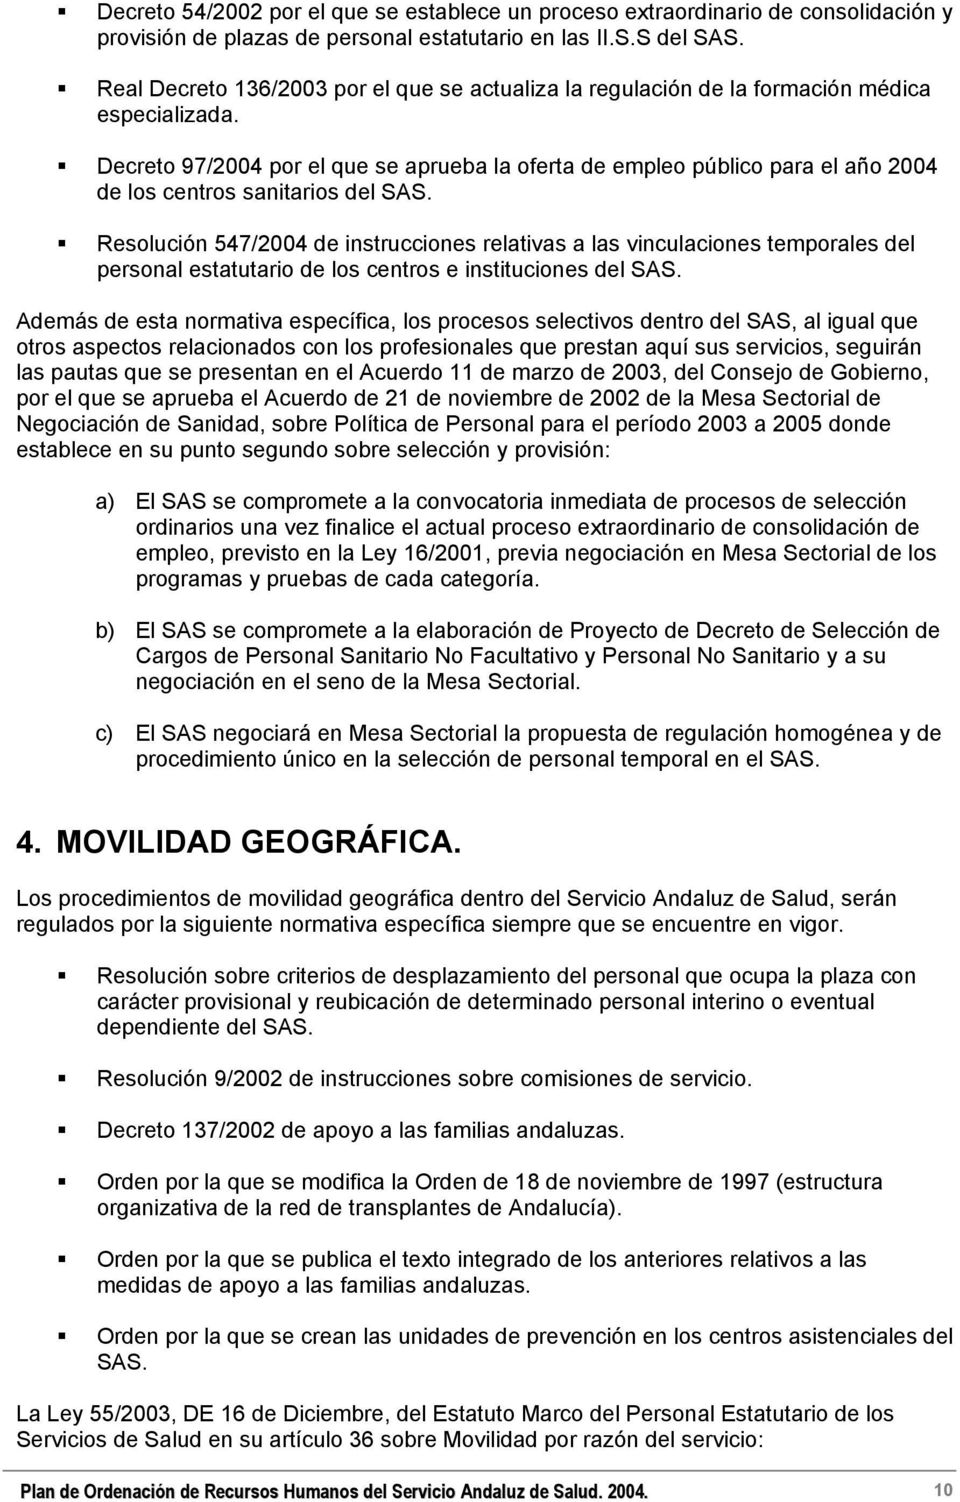 Decreto 97/24 por el que se aprueba la oferta de empleo público para el año 24 de los centros sanitarios del SAS.